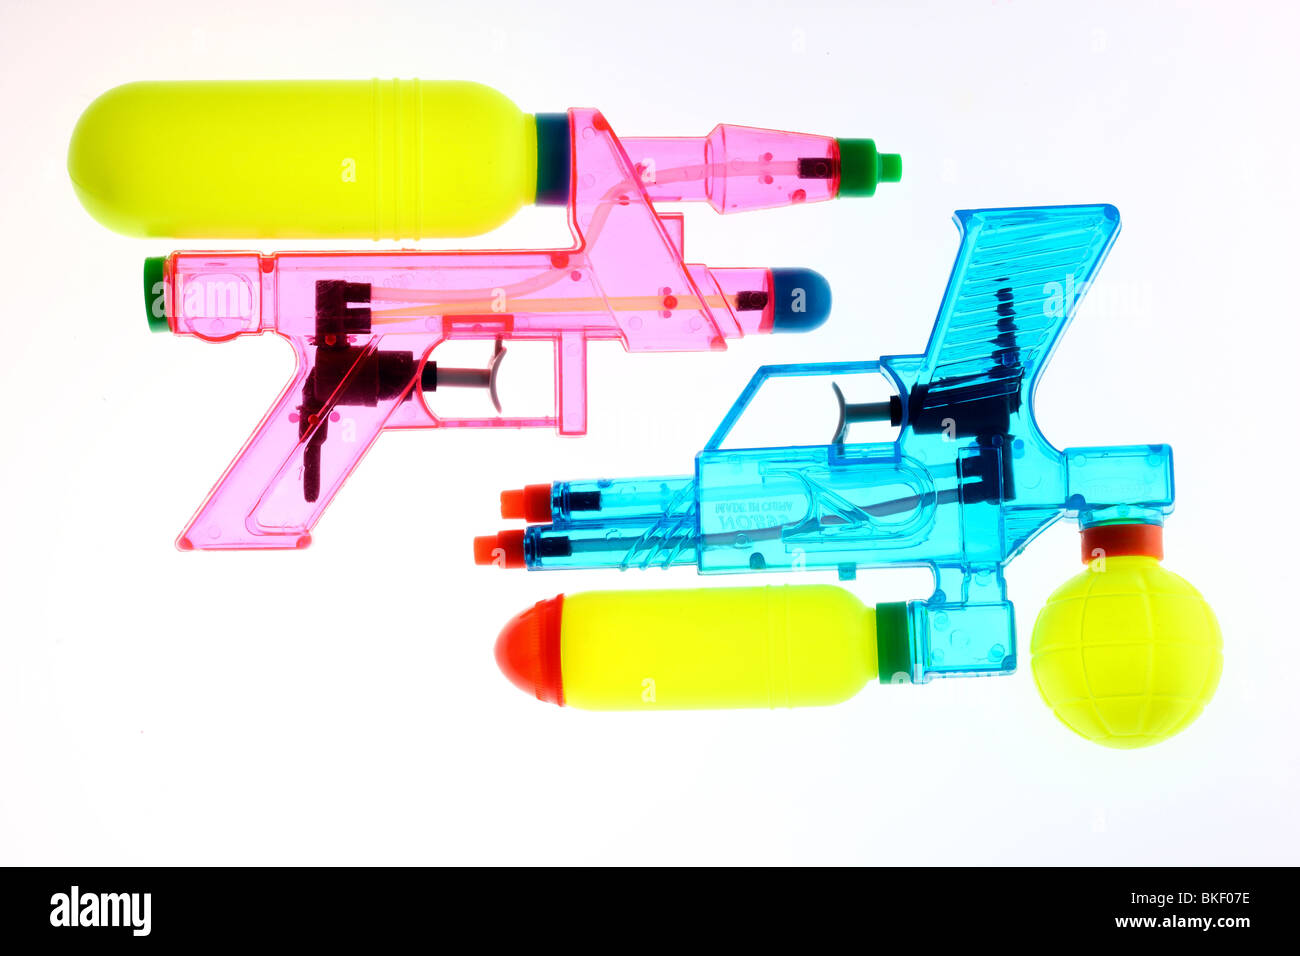 Canon à eau, pistolet à eau, jouet, transparent. Banque D'Images